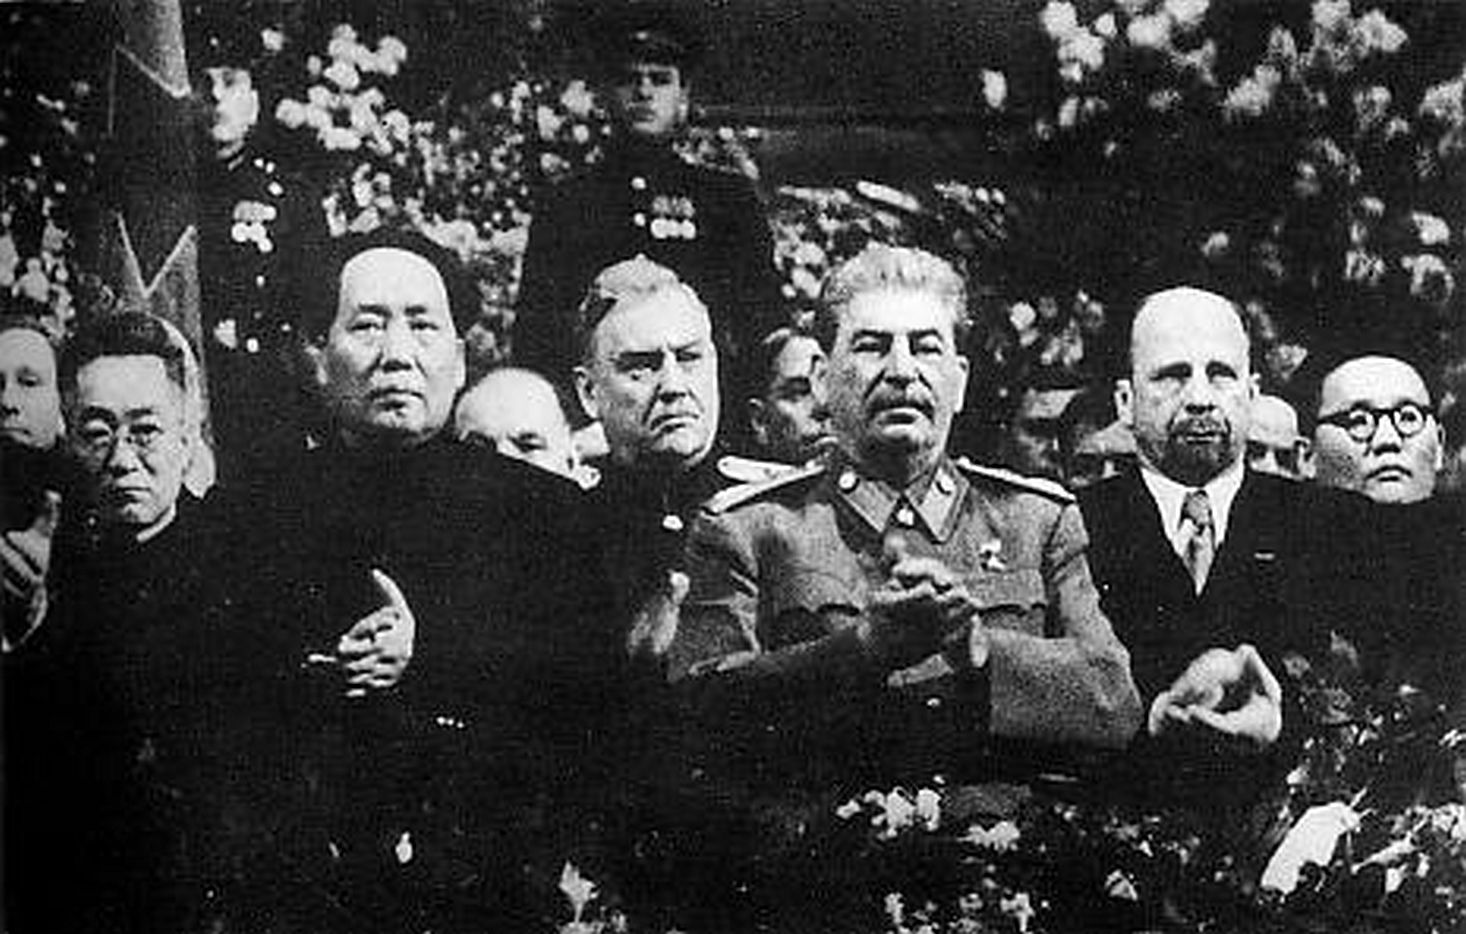 Em uma foto de 1949, aparecem aplaudindo, da esquerda para a direita, Mao Tsé-Tung, Josef Stalin e Walter Ulbricht